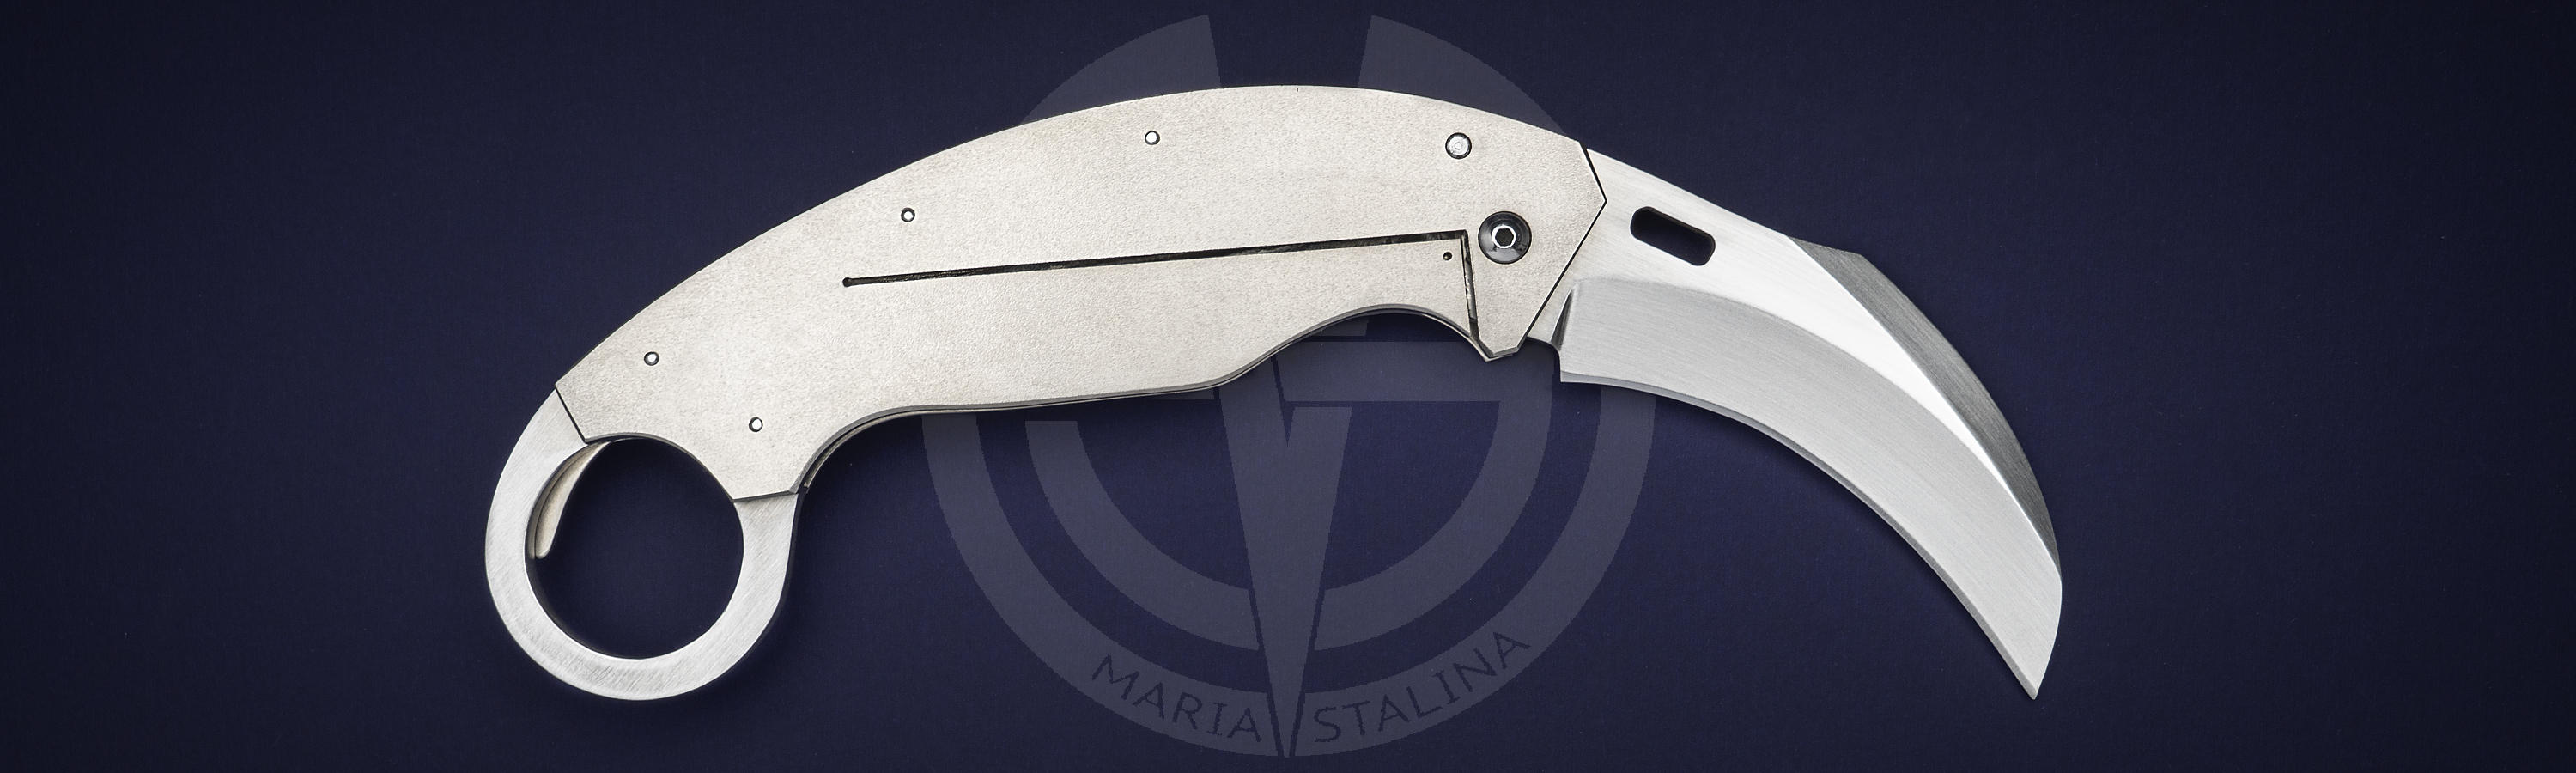 Сталь CM-154 ножа Karambit